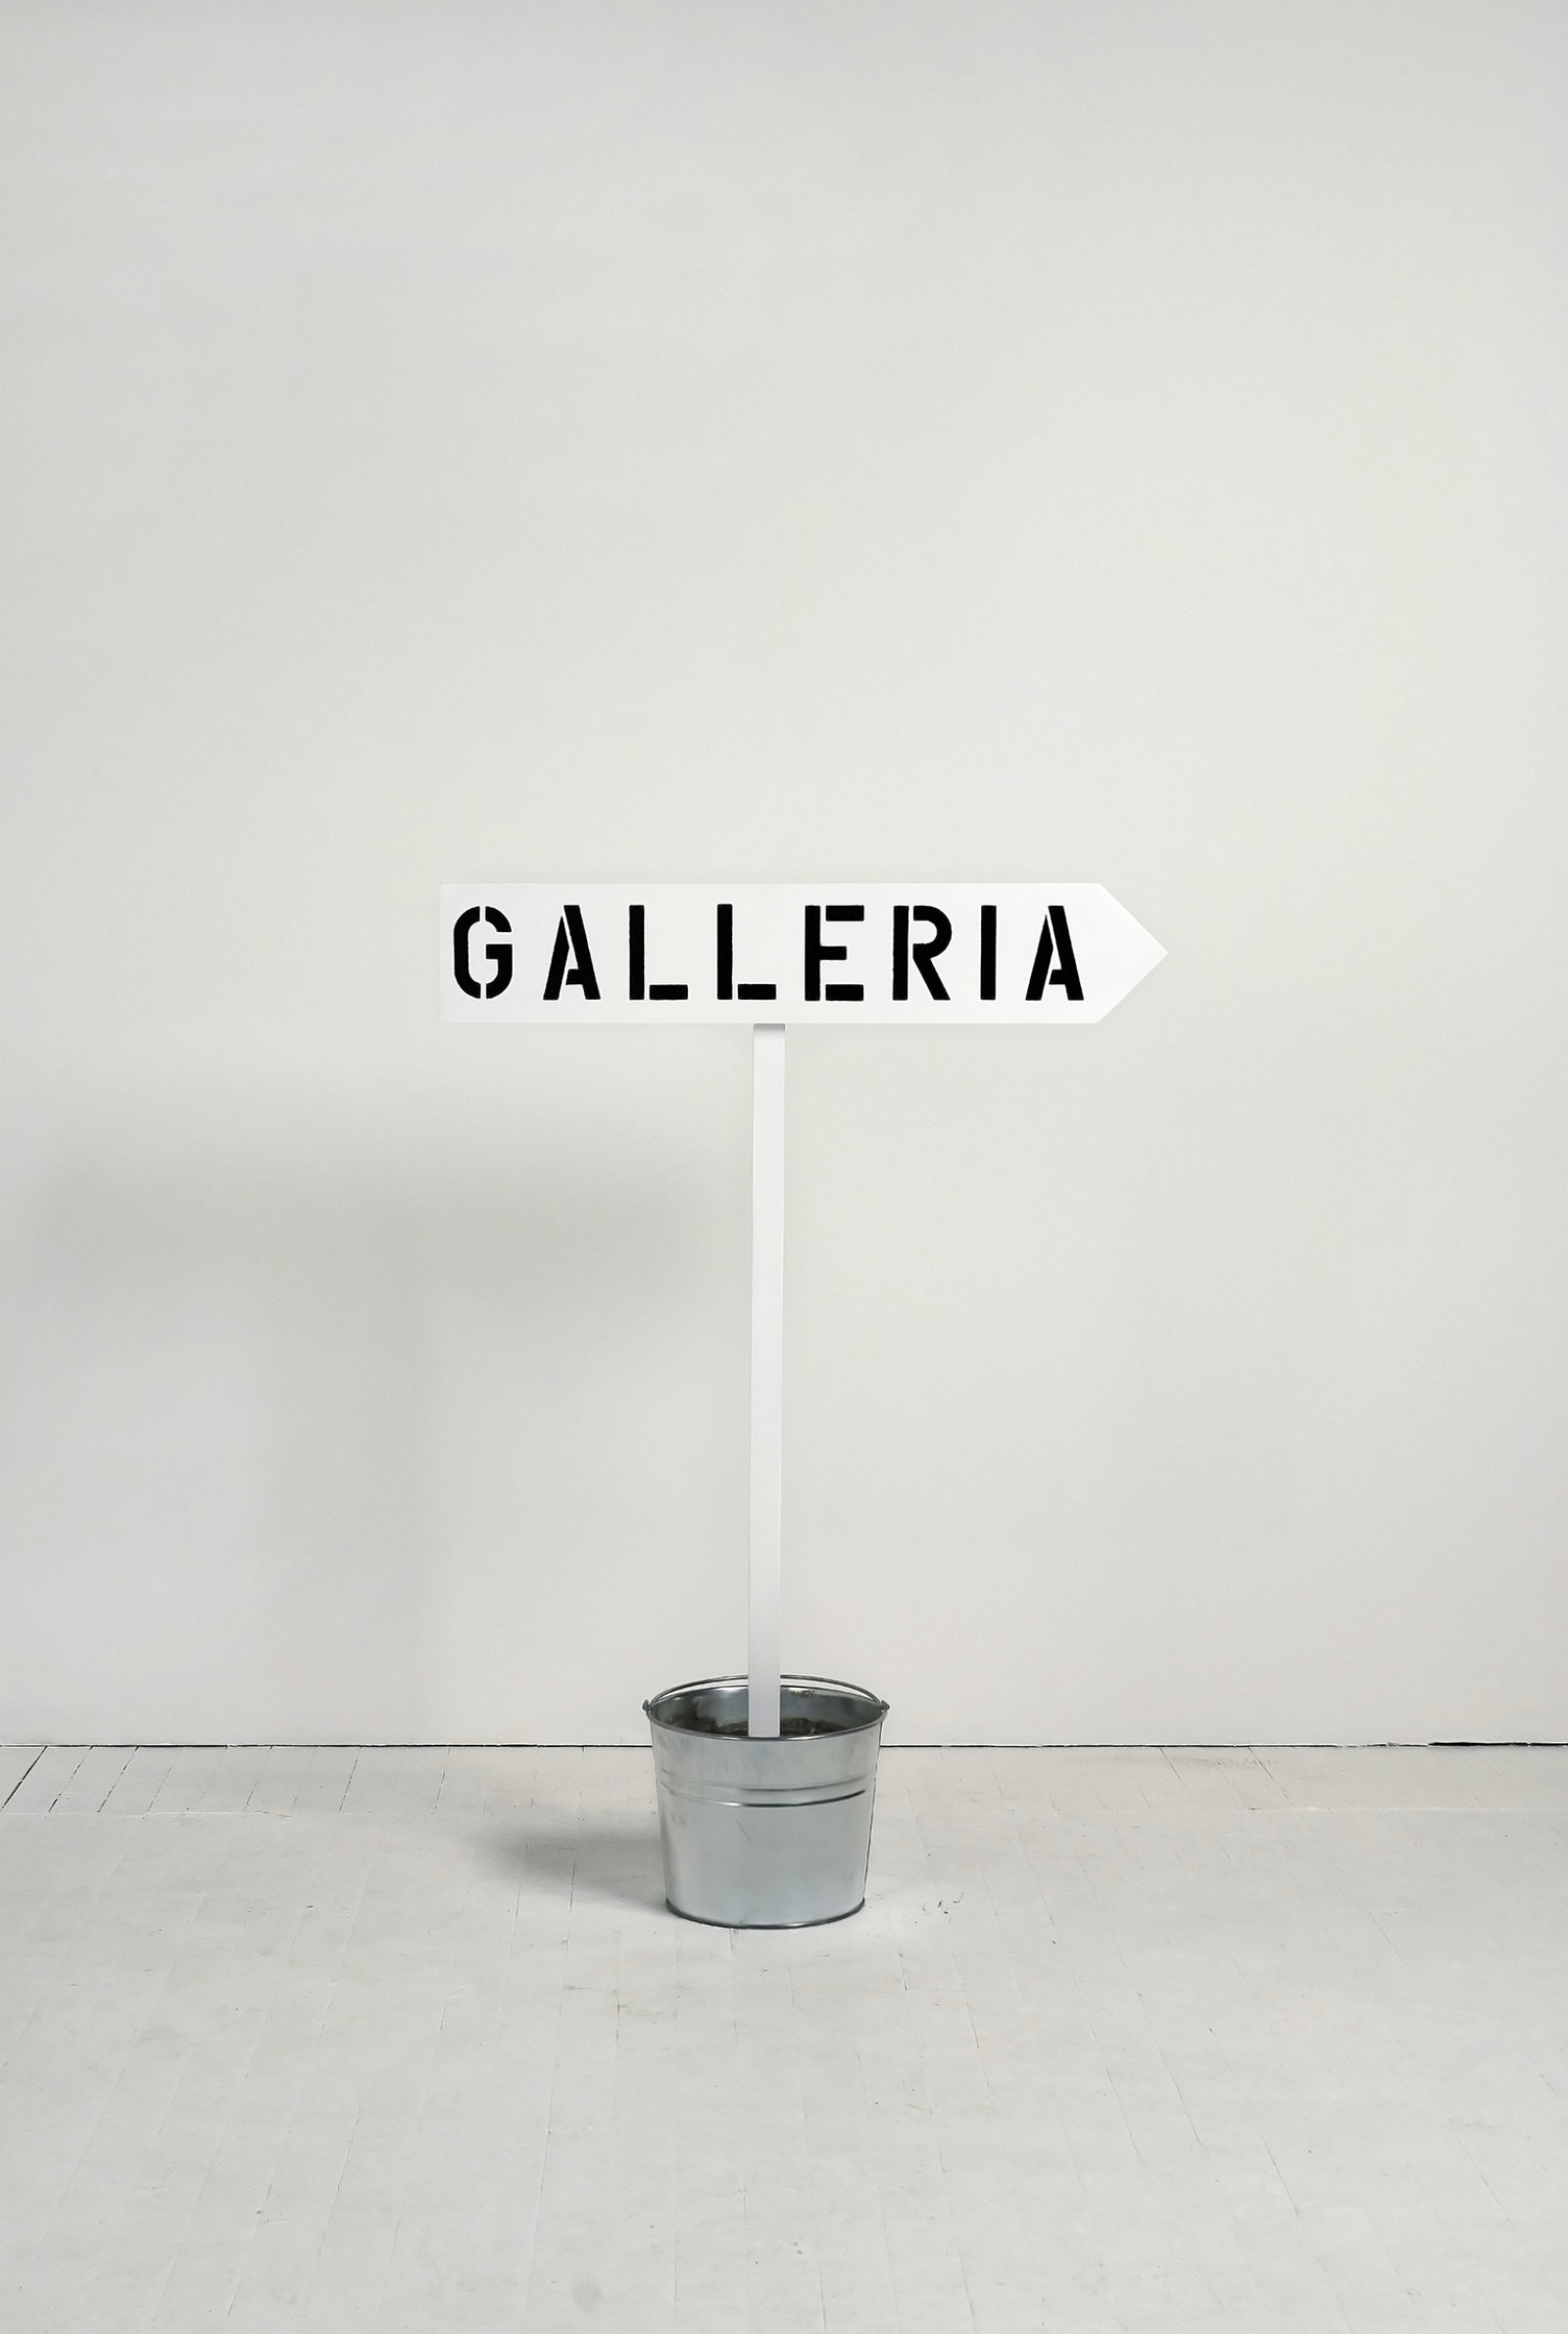 Ron Terada, Gallery, Galerie, Galleria, 2010, pigment ink print, 28 x 20 in. (70 x 51 cm)